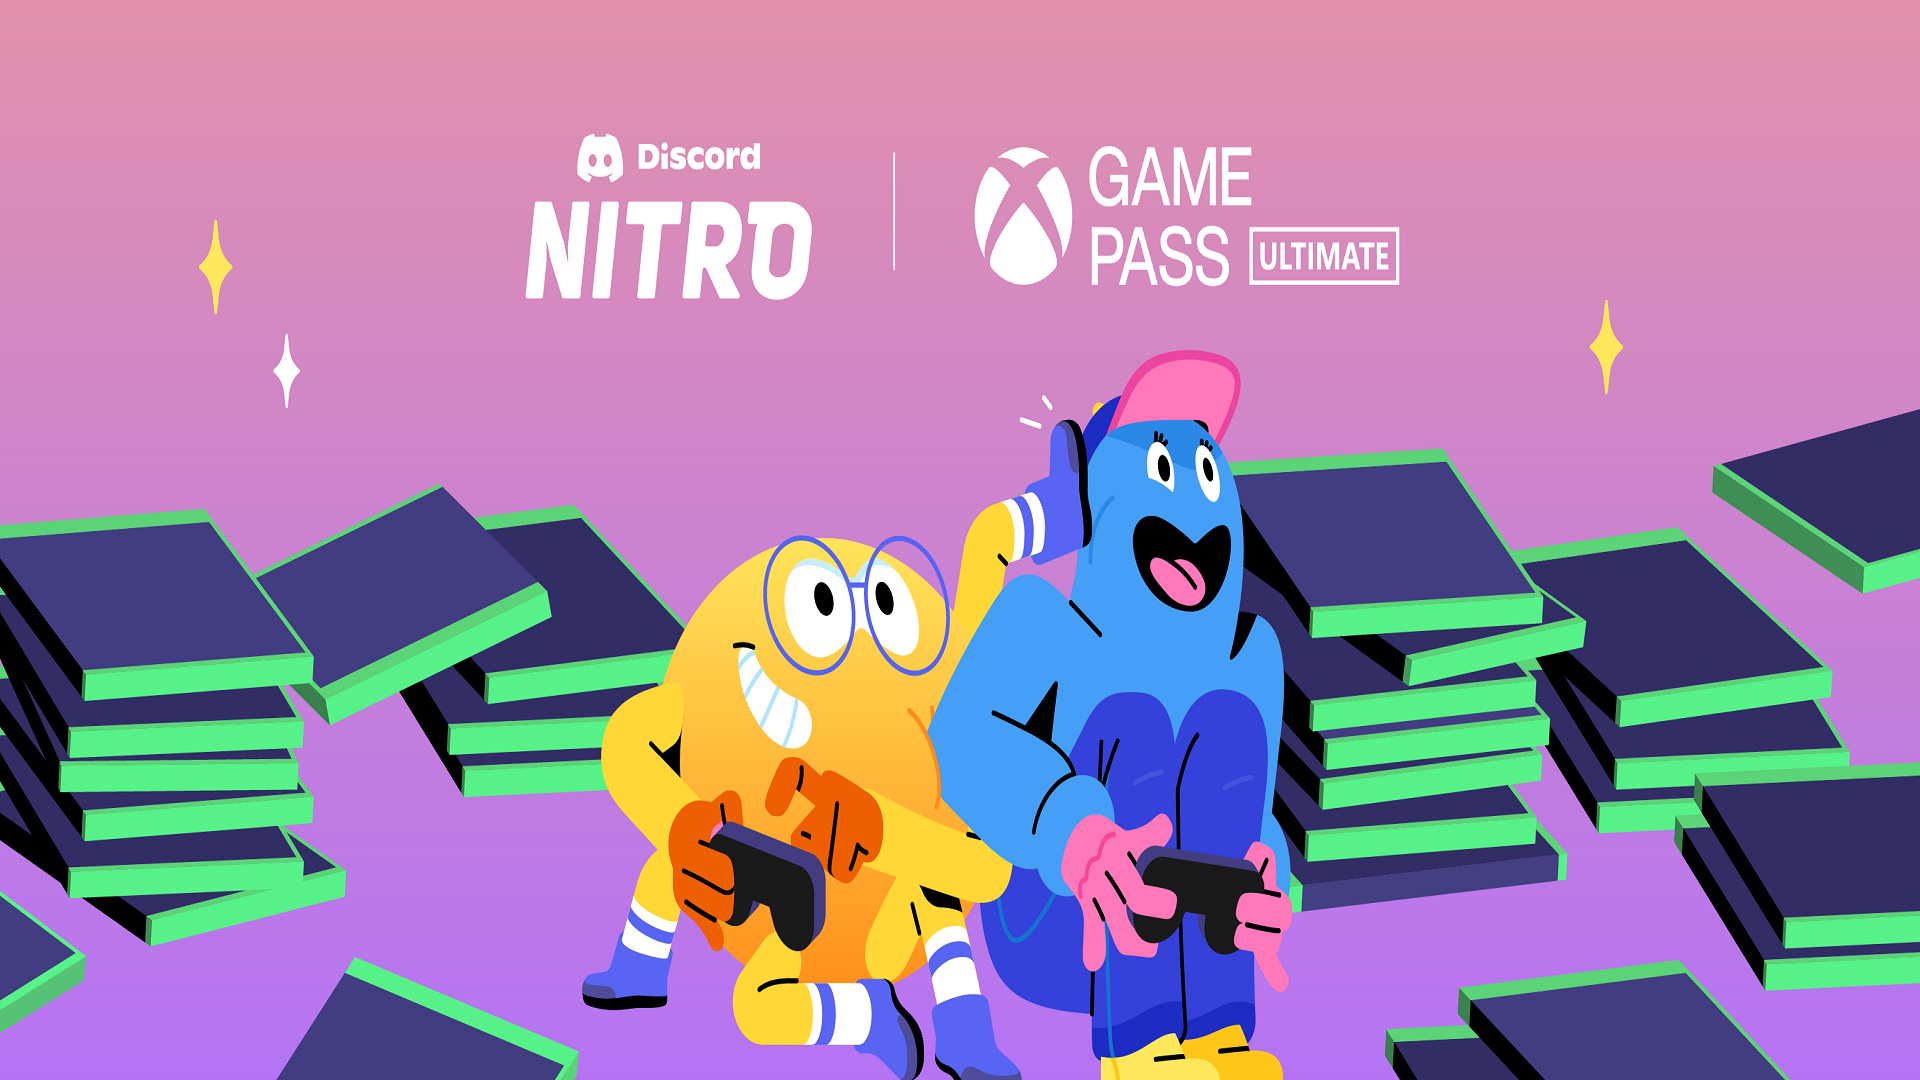 discord nitro xbox game pass pc